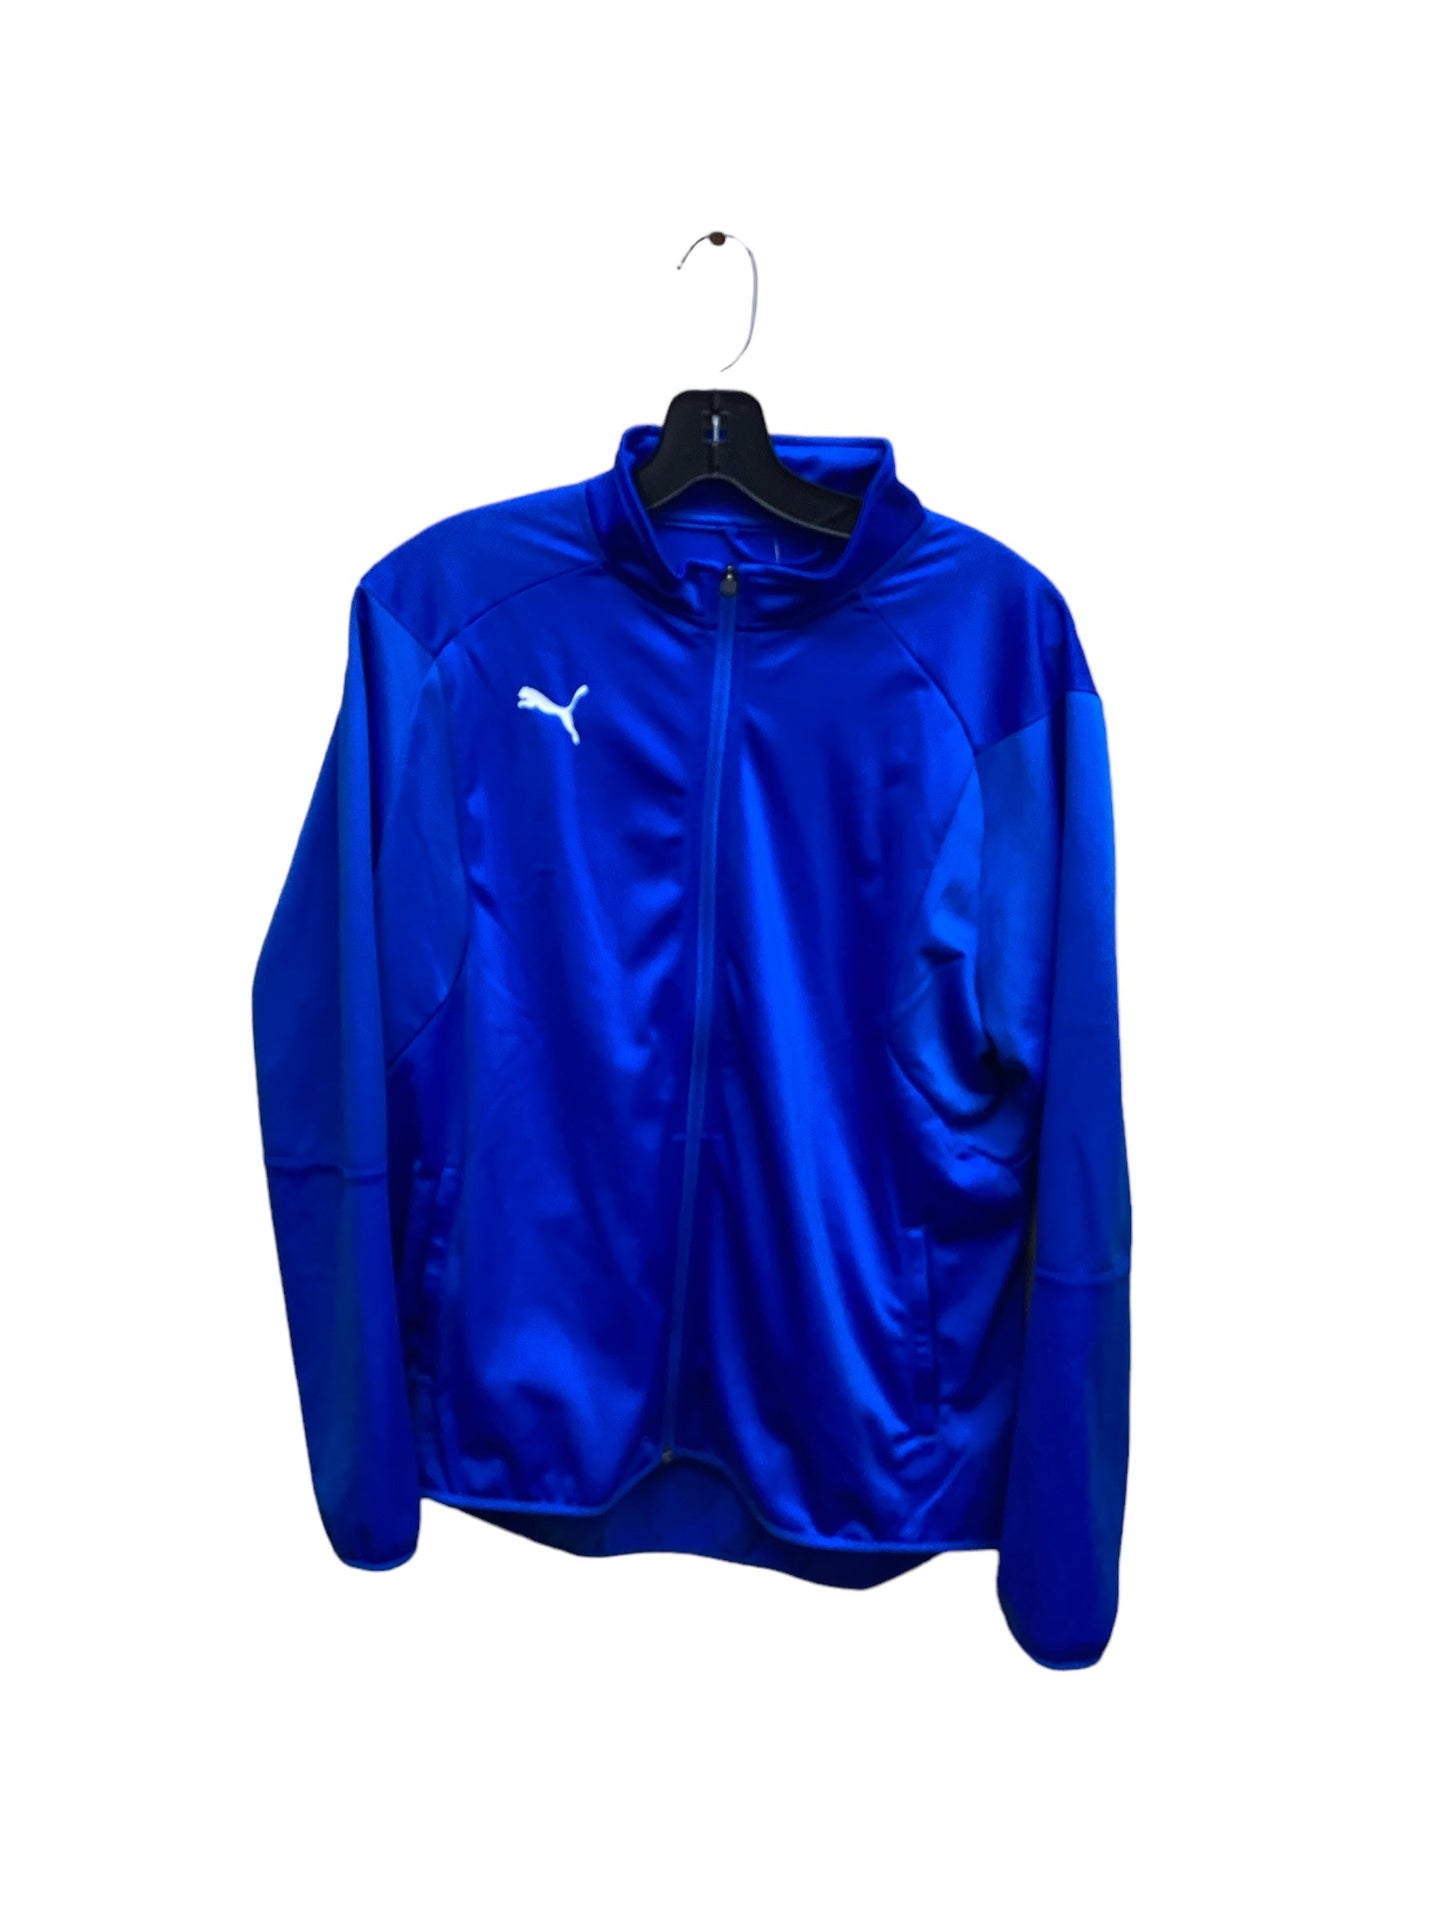 Athletic Jacket By Puma  Size: Xl